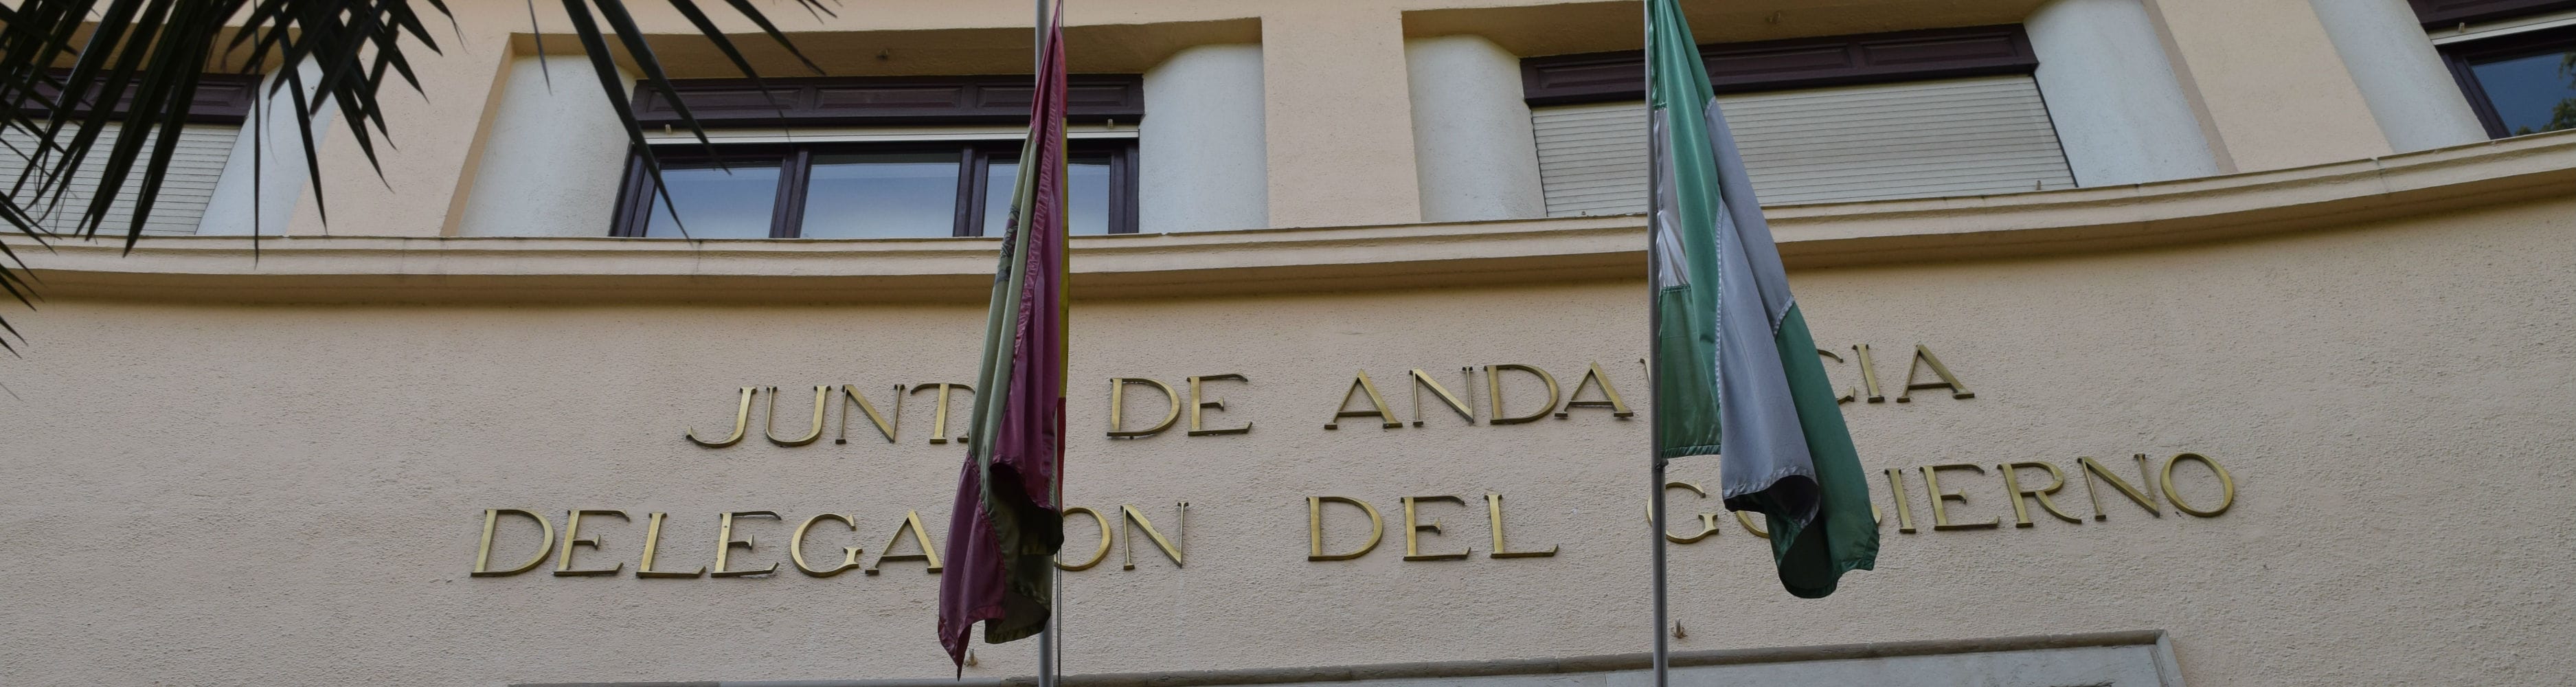 Sede de la Delegación del Gobierno de la Junta de Andalucía en Jaén